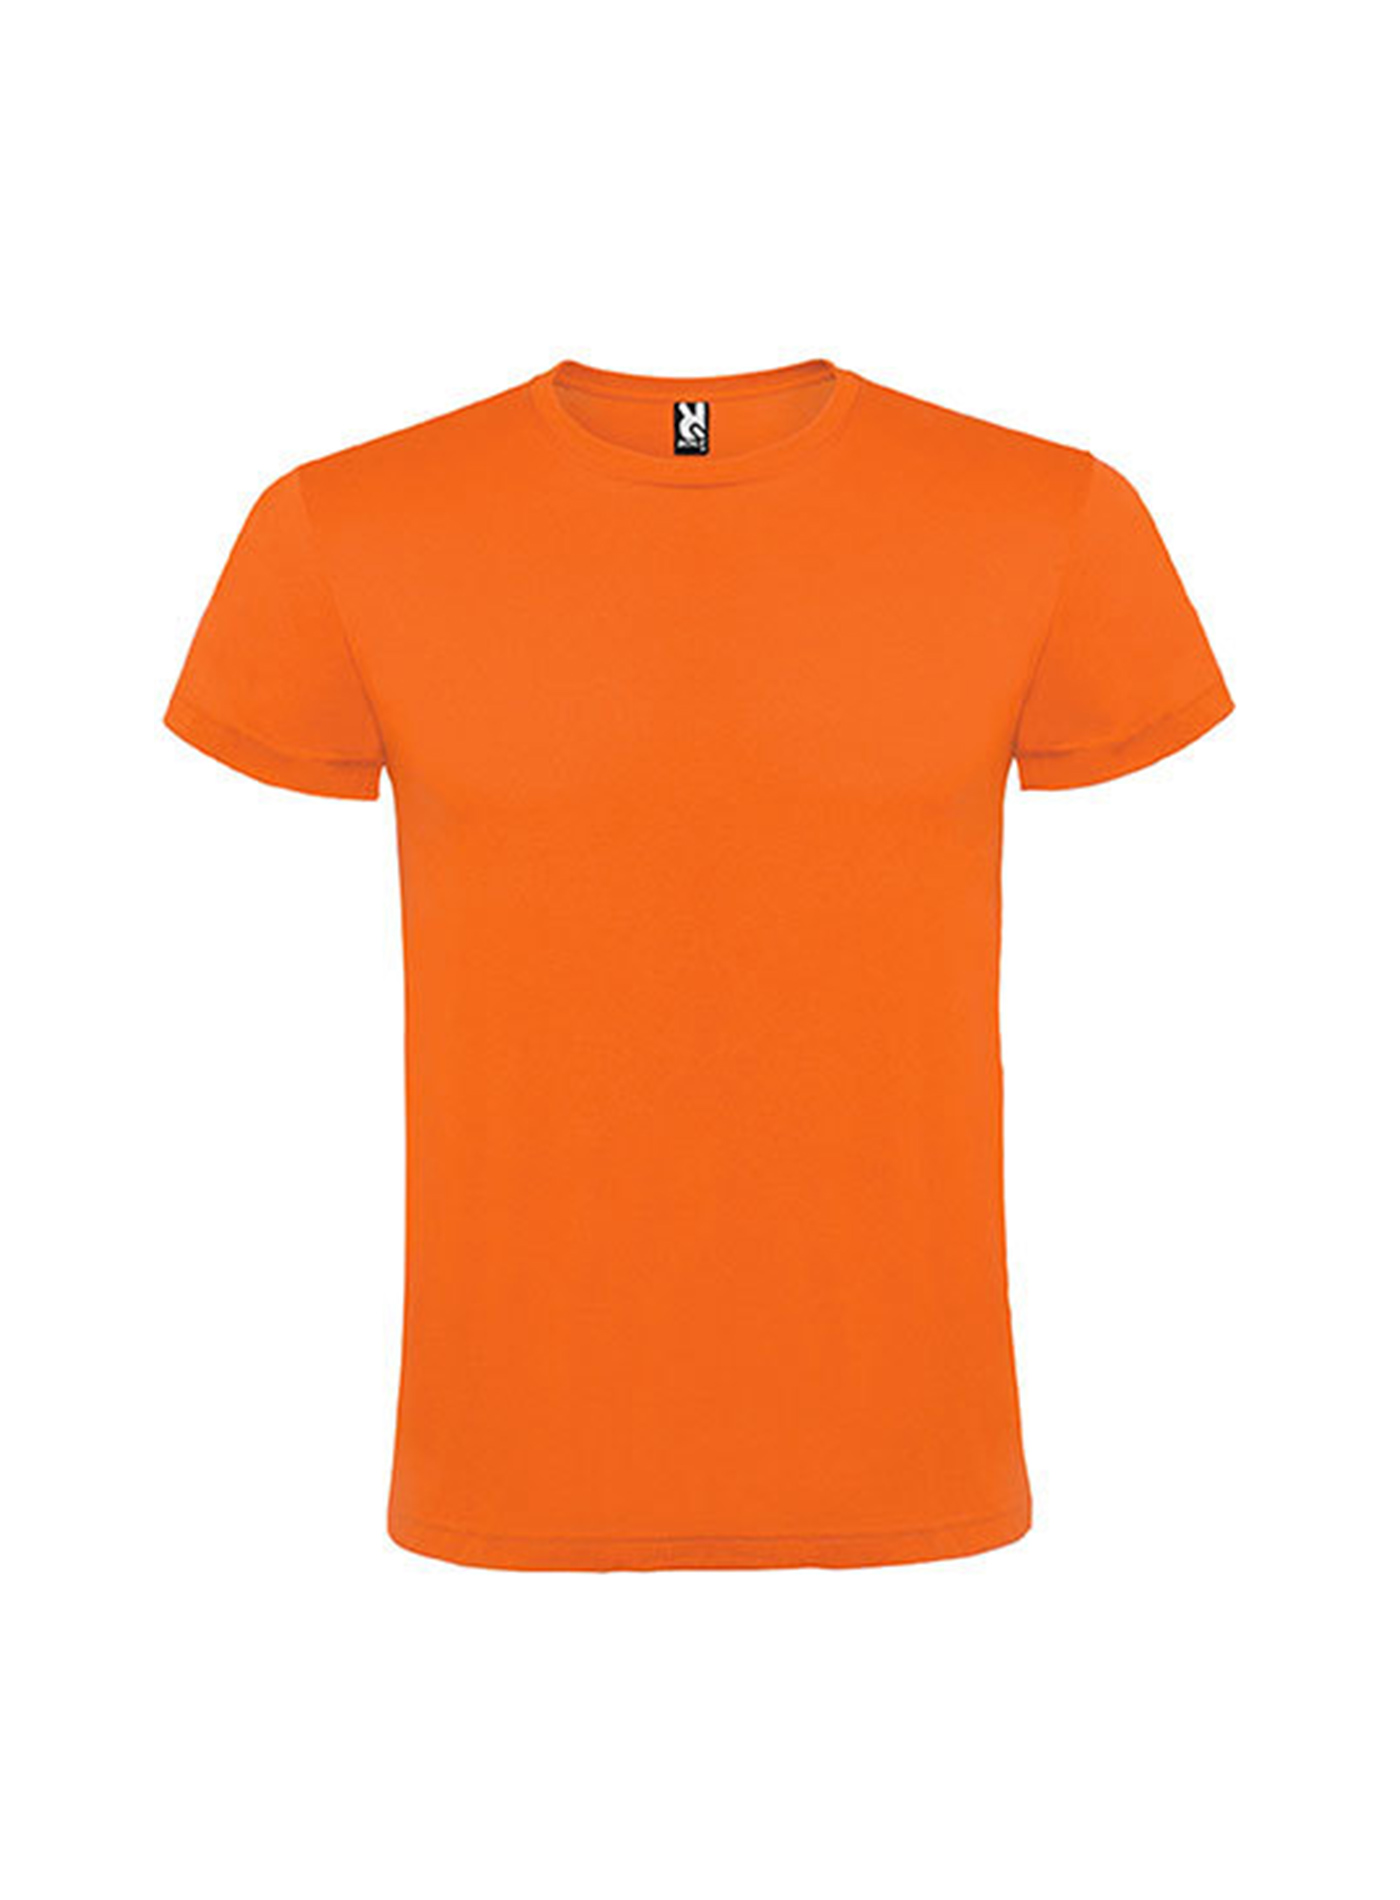 Pánské tričko Roly Atomic - Oranžová M